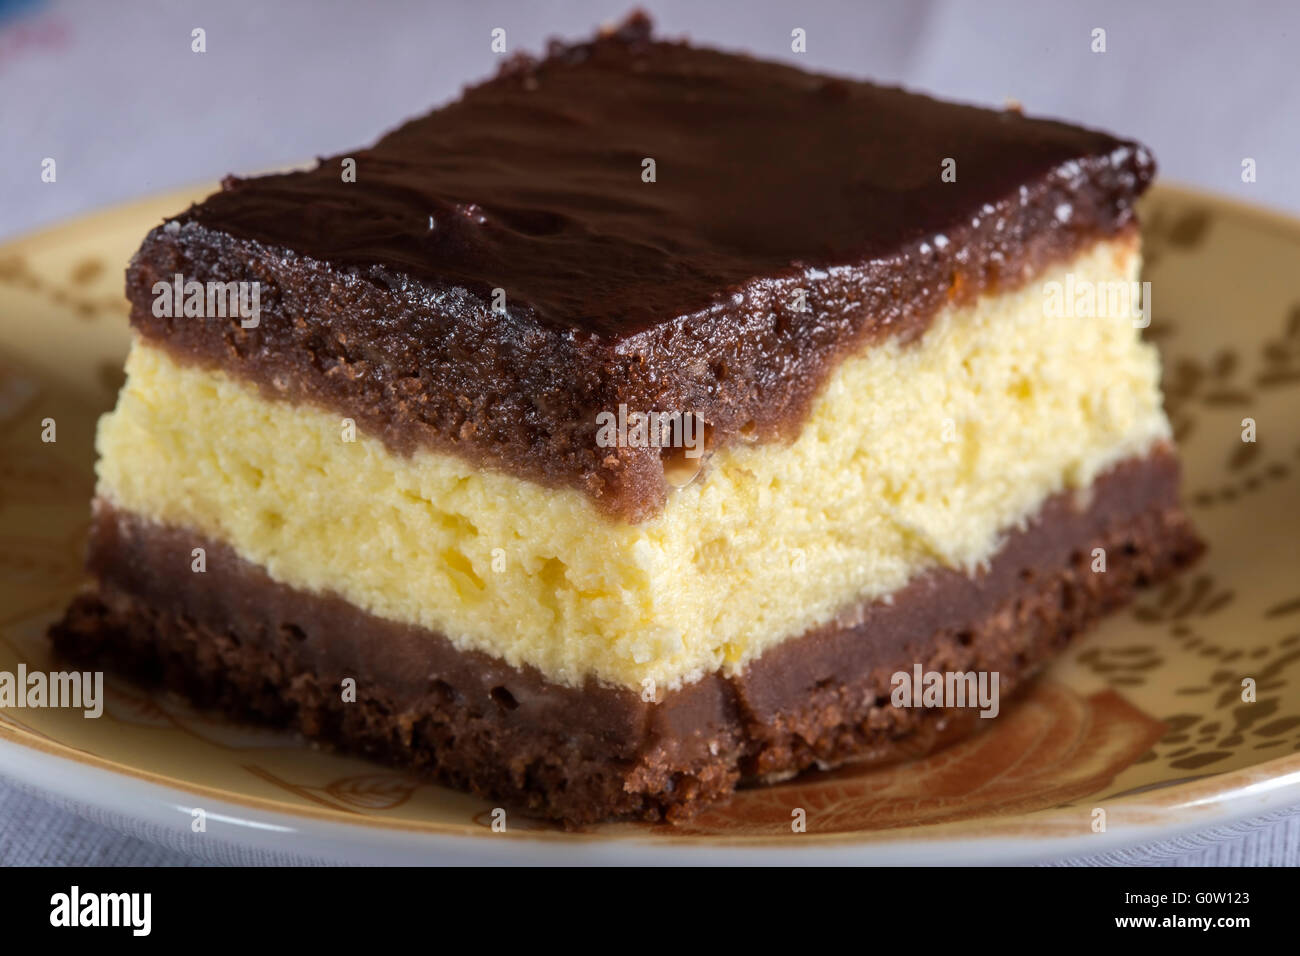 Morceau de gâteau au fromage au chocolat brownie sur la plaque Banque D'Images